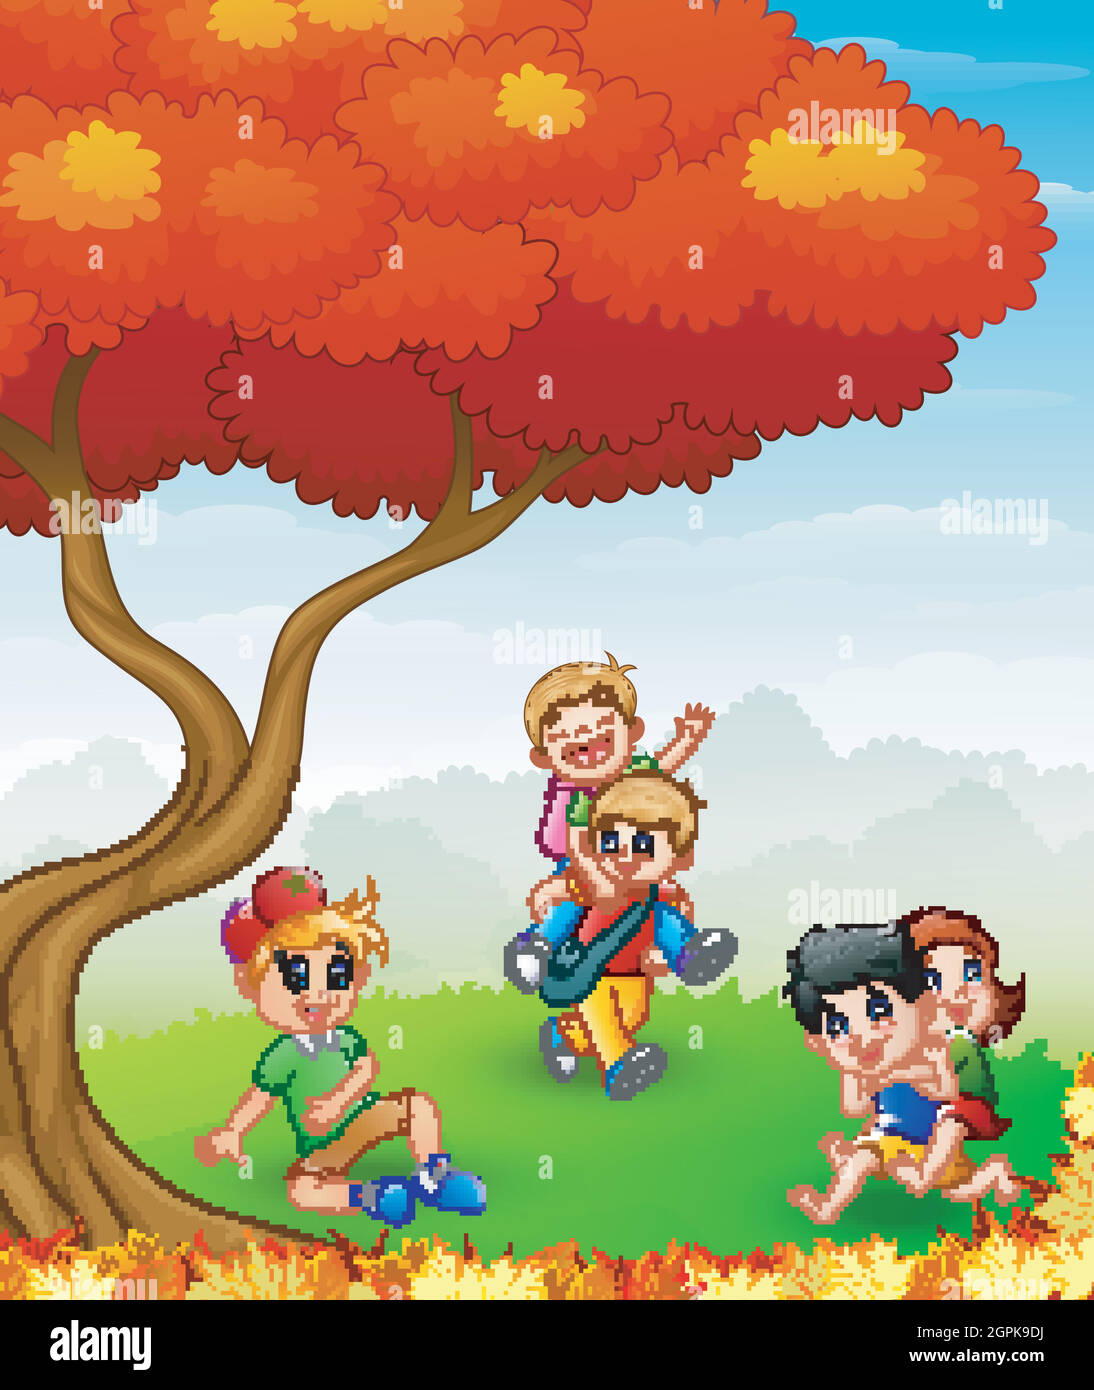 Des enfants heureux jouant dans les arbres d'automne Illustration de Vecteur